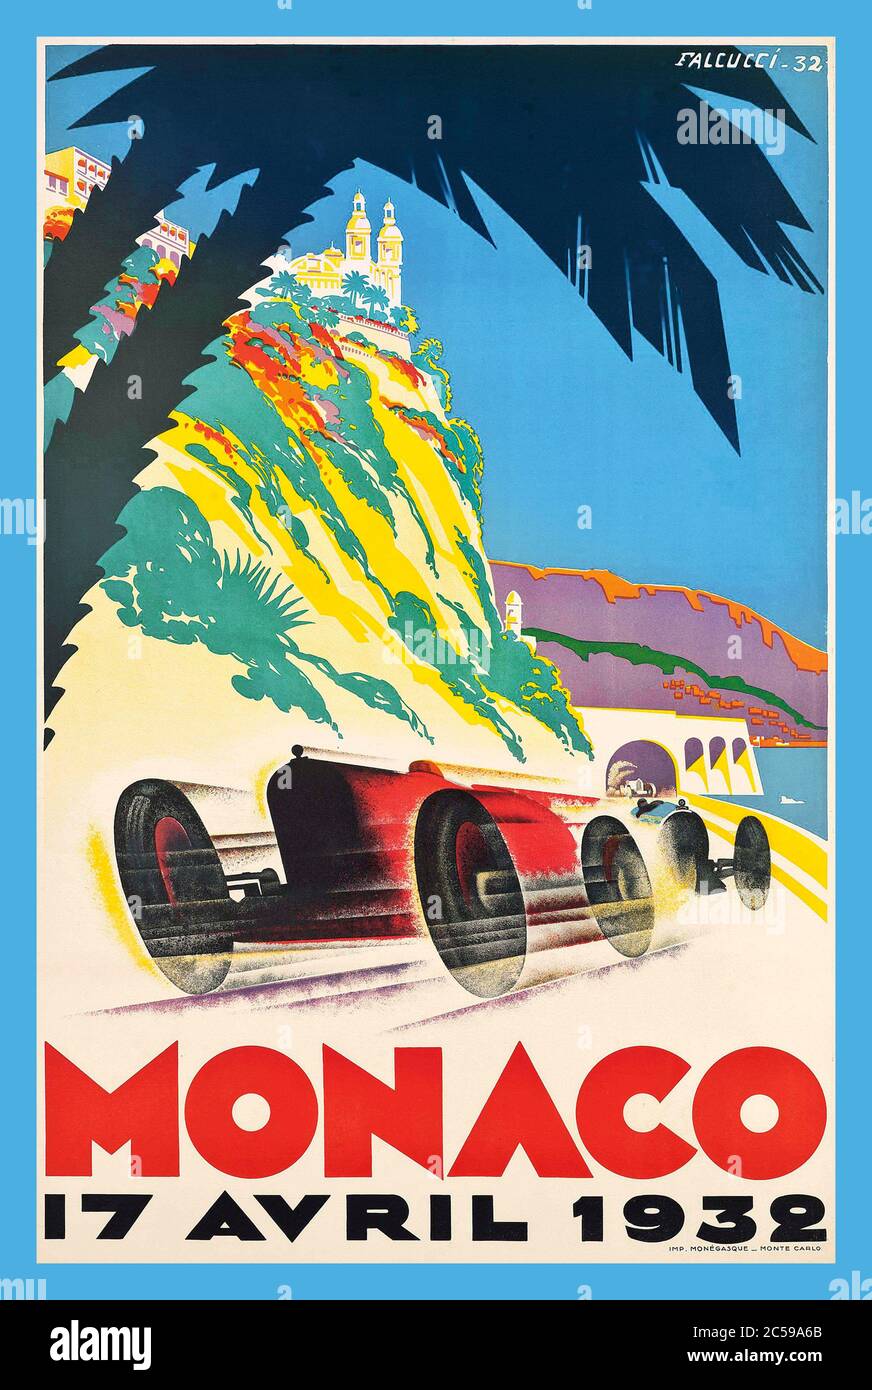 Monaco Vintage 1932 Motorrennen Poster Grand Prix der Monaco Grand Prix 1932 war ein Grand Prix Motorrennen, das am 17. April 1932 auf dem Circuit de Monaco stattfand. Tazio Nuvolari, der für das Alfa Romeo Team fuhr, gewann das Rennen um nur 2.8 Sekunden vor dem Privatfahrer Alfa von Rudolf Caracciola, Stockfoto